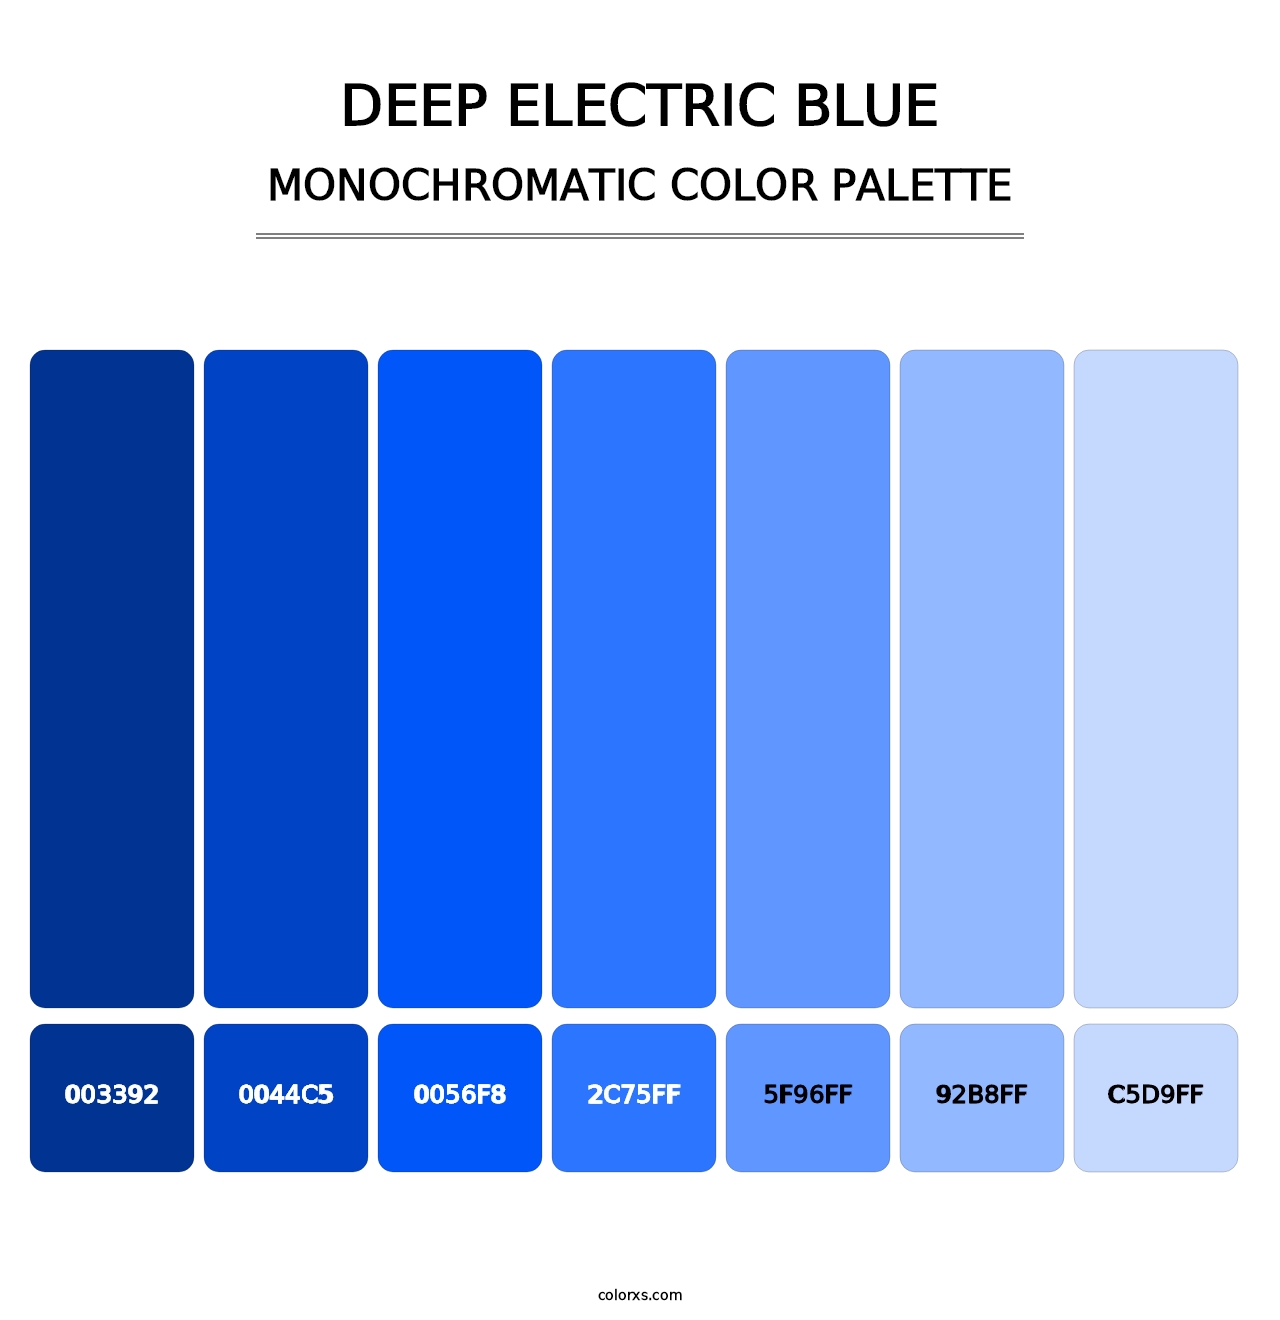 Deep Electric Blue - Monochromatic Color Palette